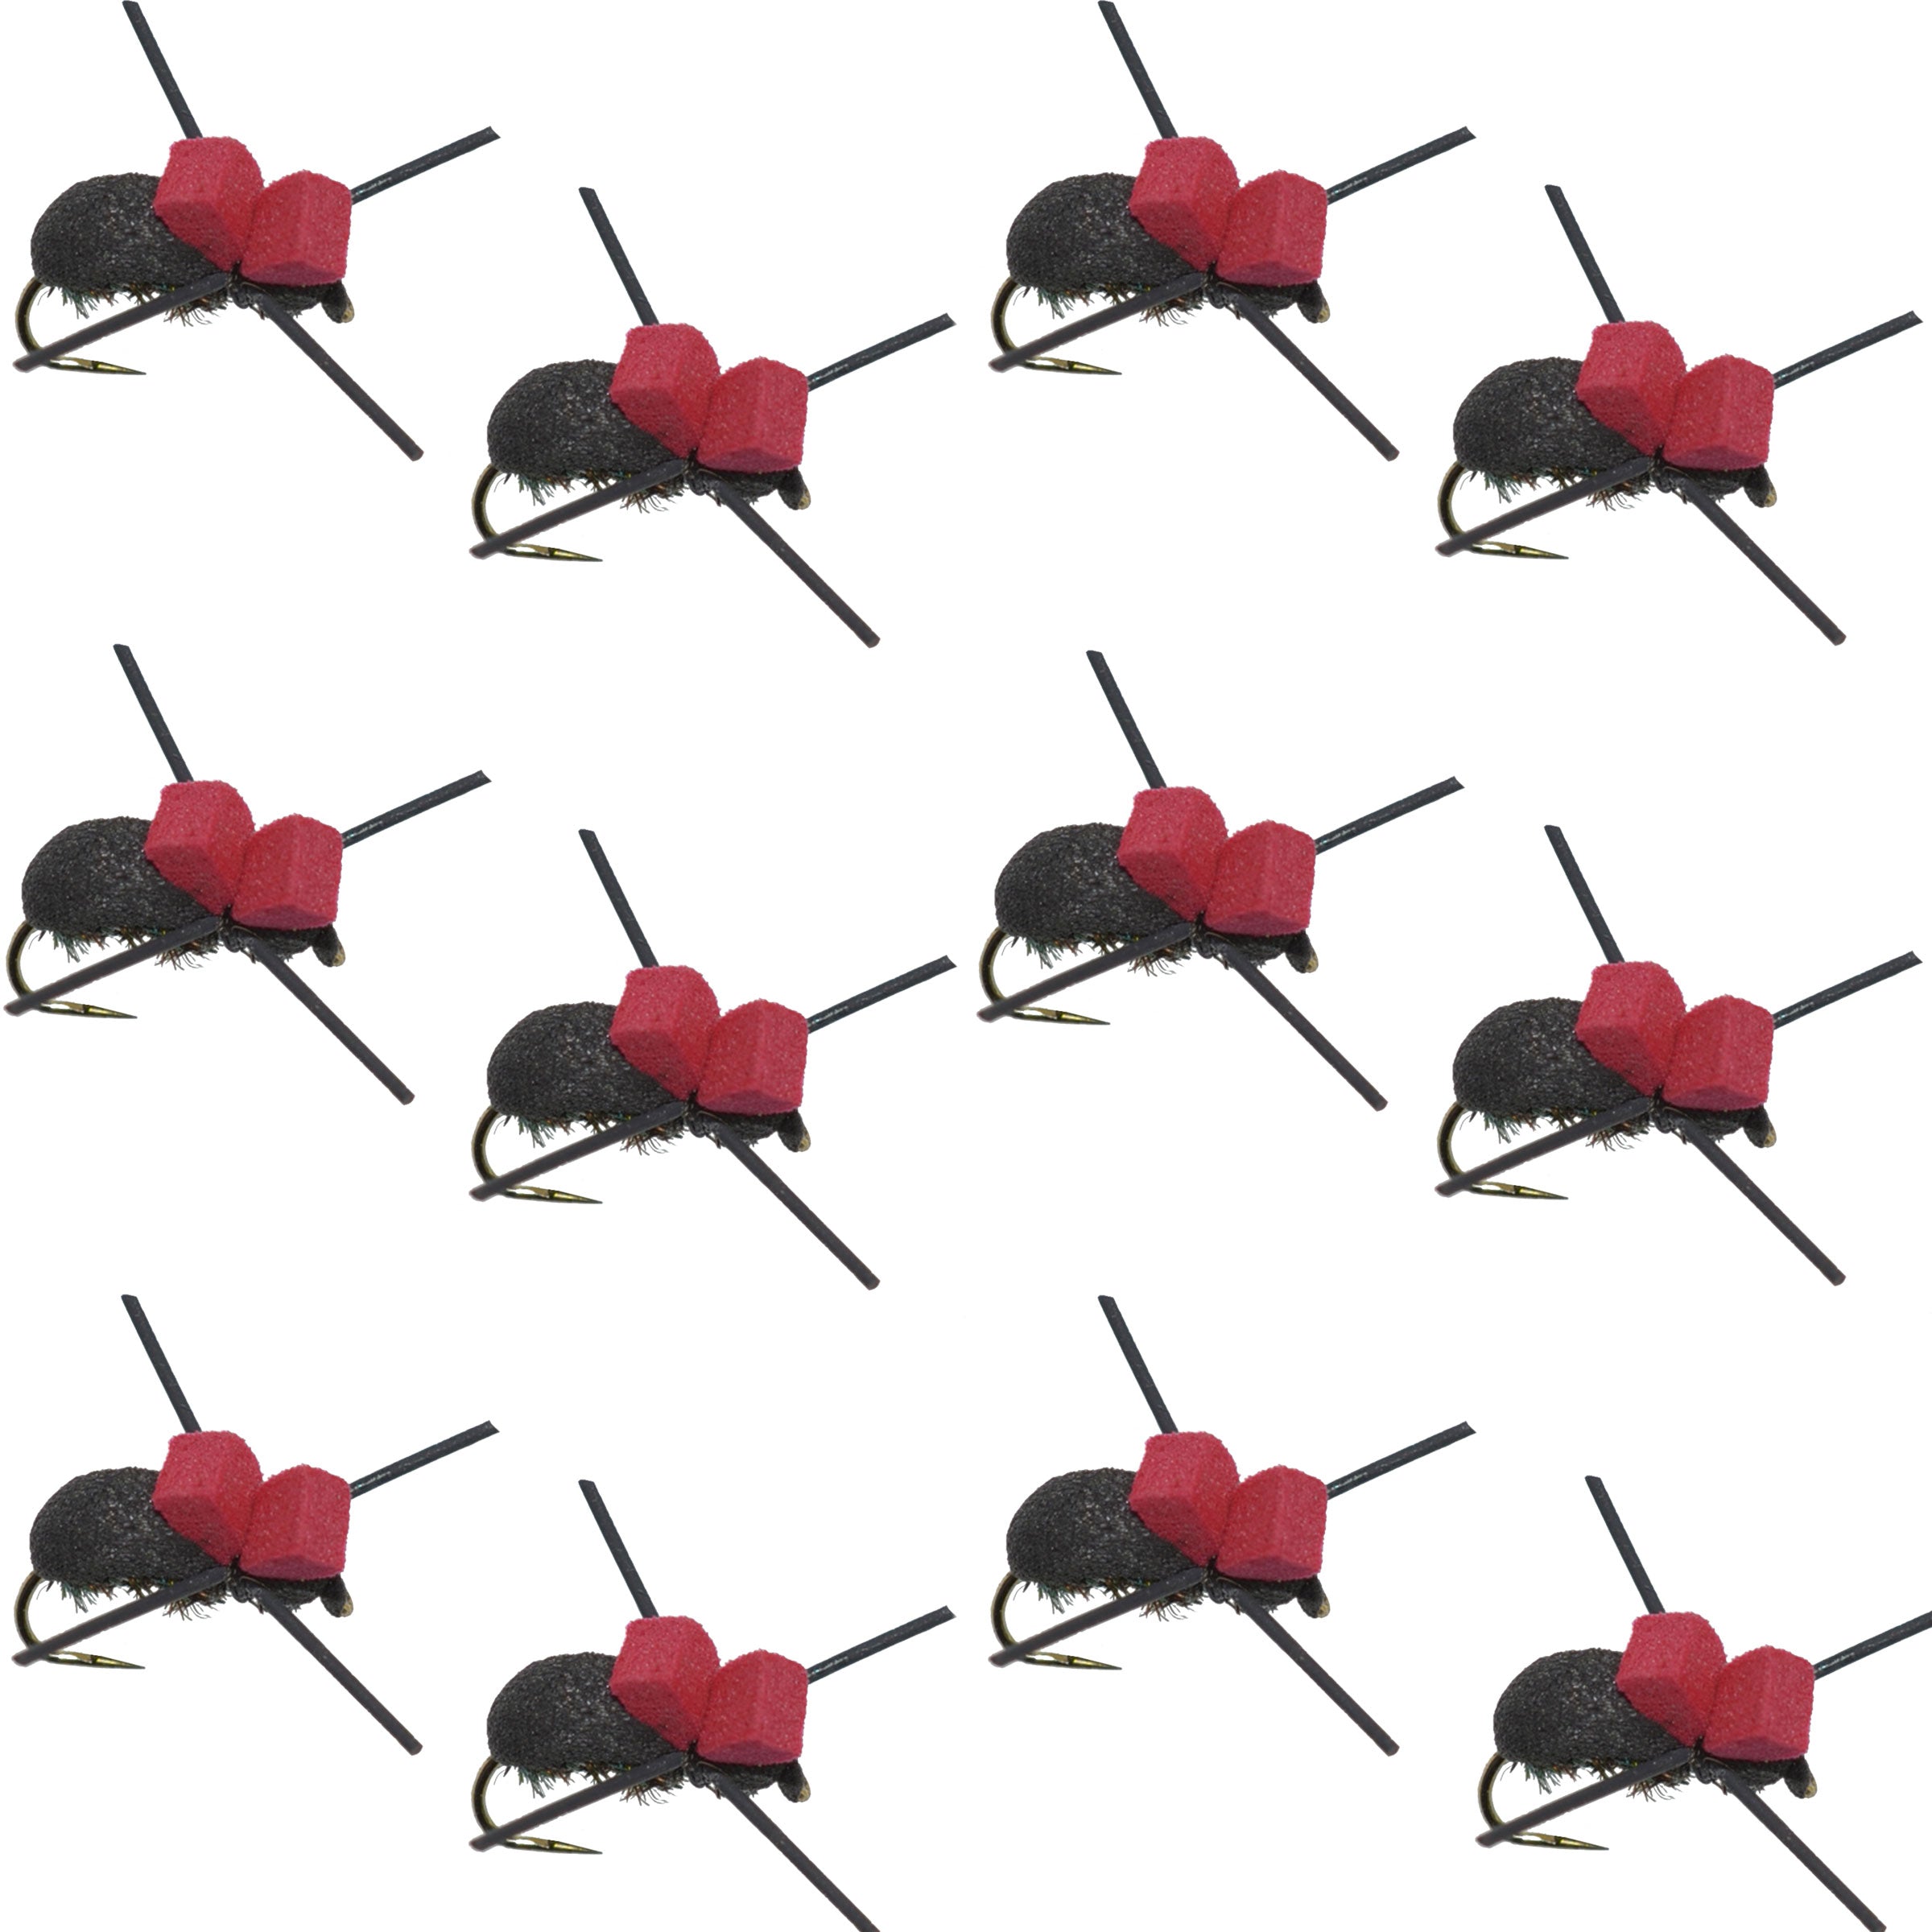 Barbless Red Top Black Foam Beetle Terrestrial Trout Dry Fly Fishing Flies - 1 Dozen Flies Size 14